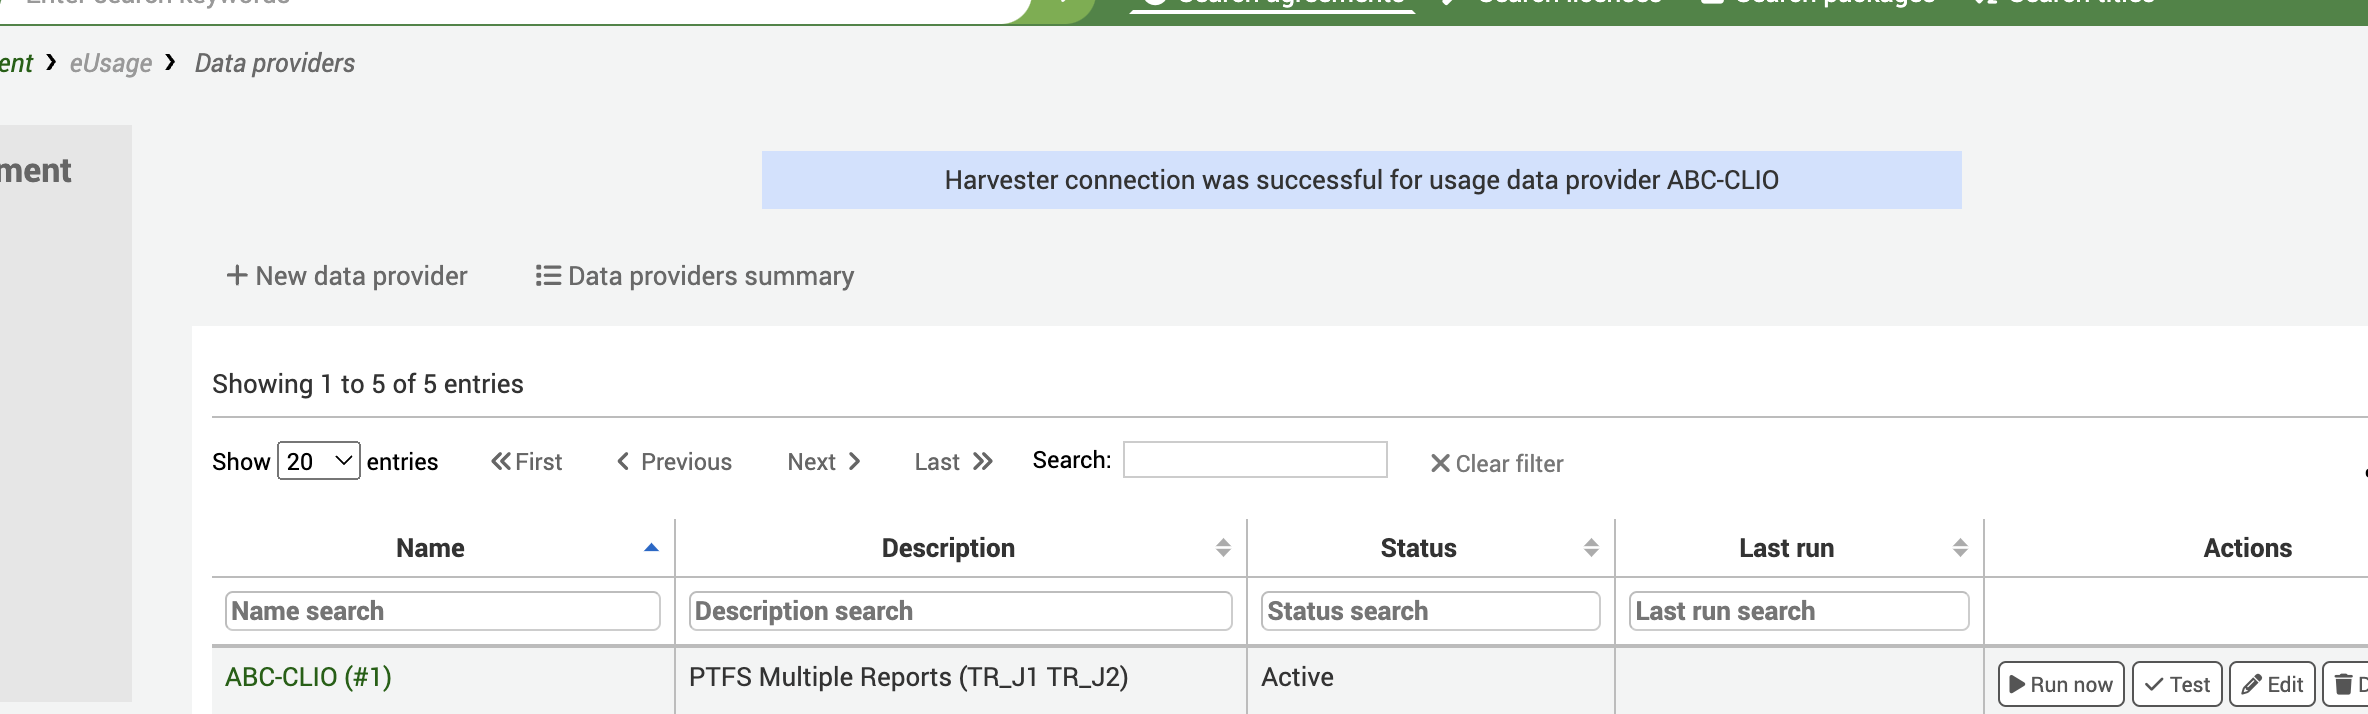 संदेश के साथ डेटा प्रदाता स्क्रीन: 'हार्वेस्टर कनेक्शन का उपयोग डेटा प्रदाता एबीसी-सीएलआईओ के लिए सफल रहा है।।